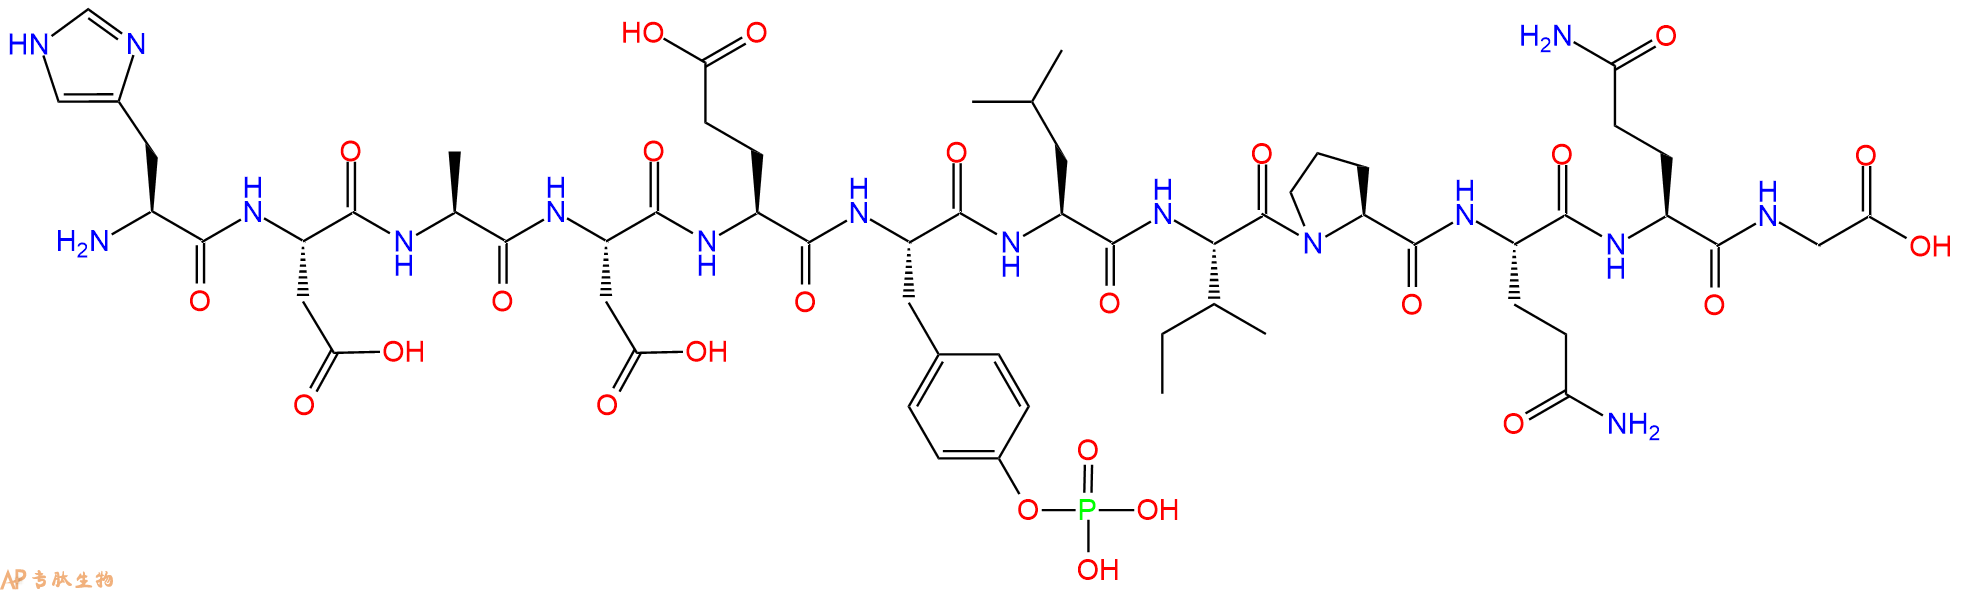 专肽生物产品表皮生长因子受体底物2 (phospho-tyr5)、EGF Receptor Substrate